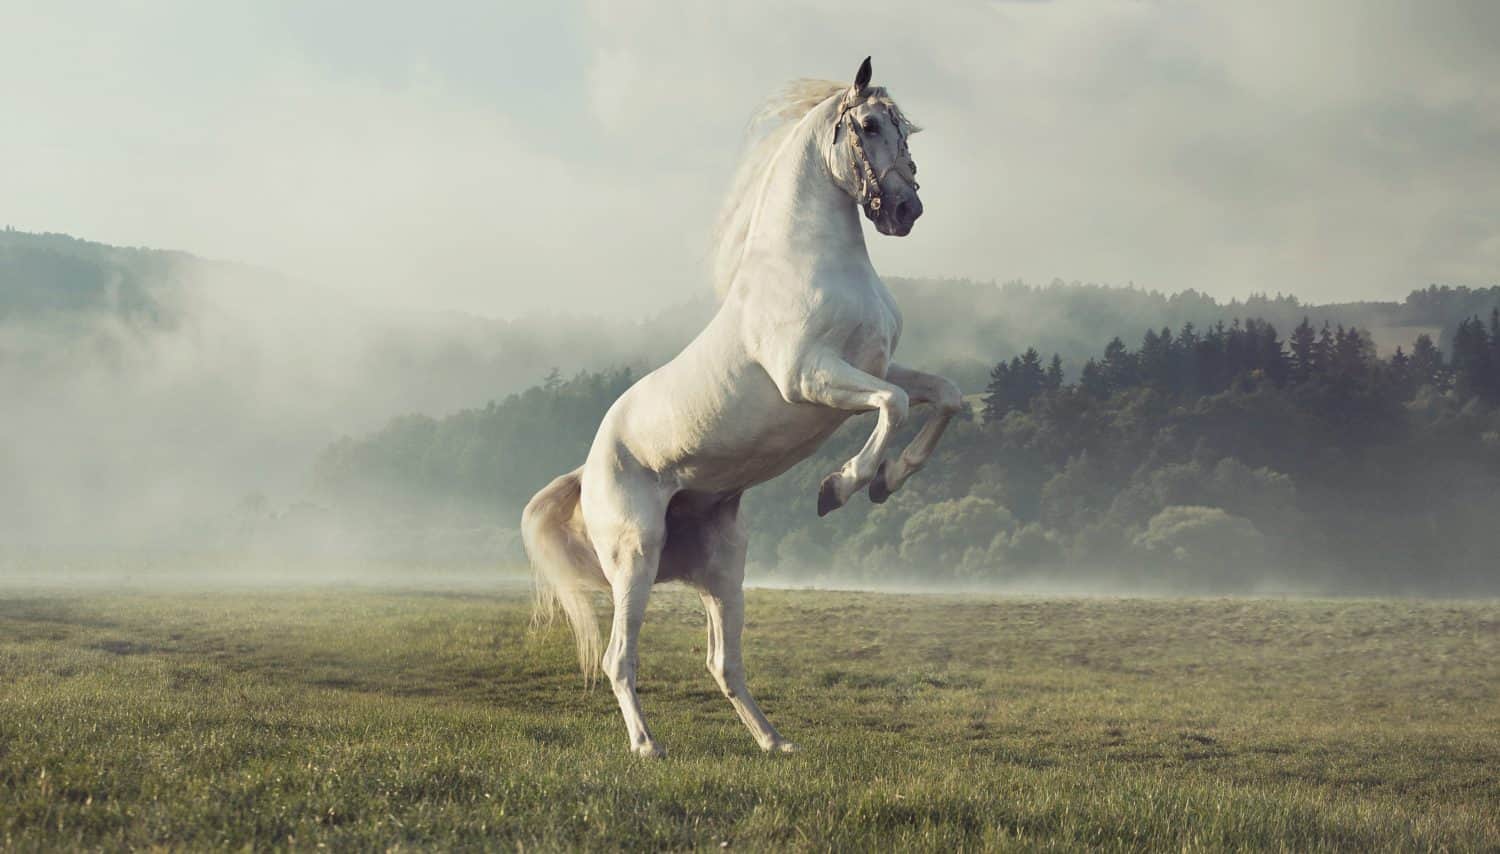 Wild white horse